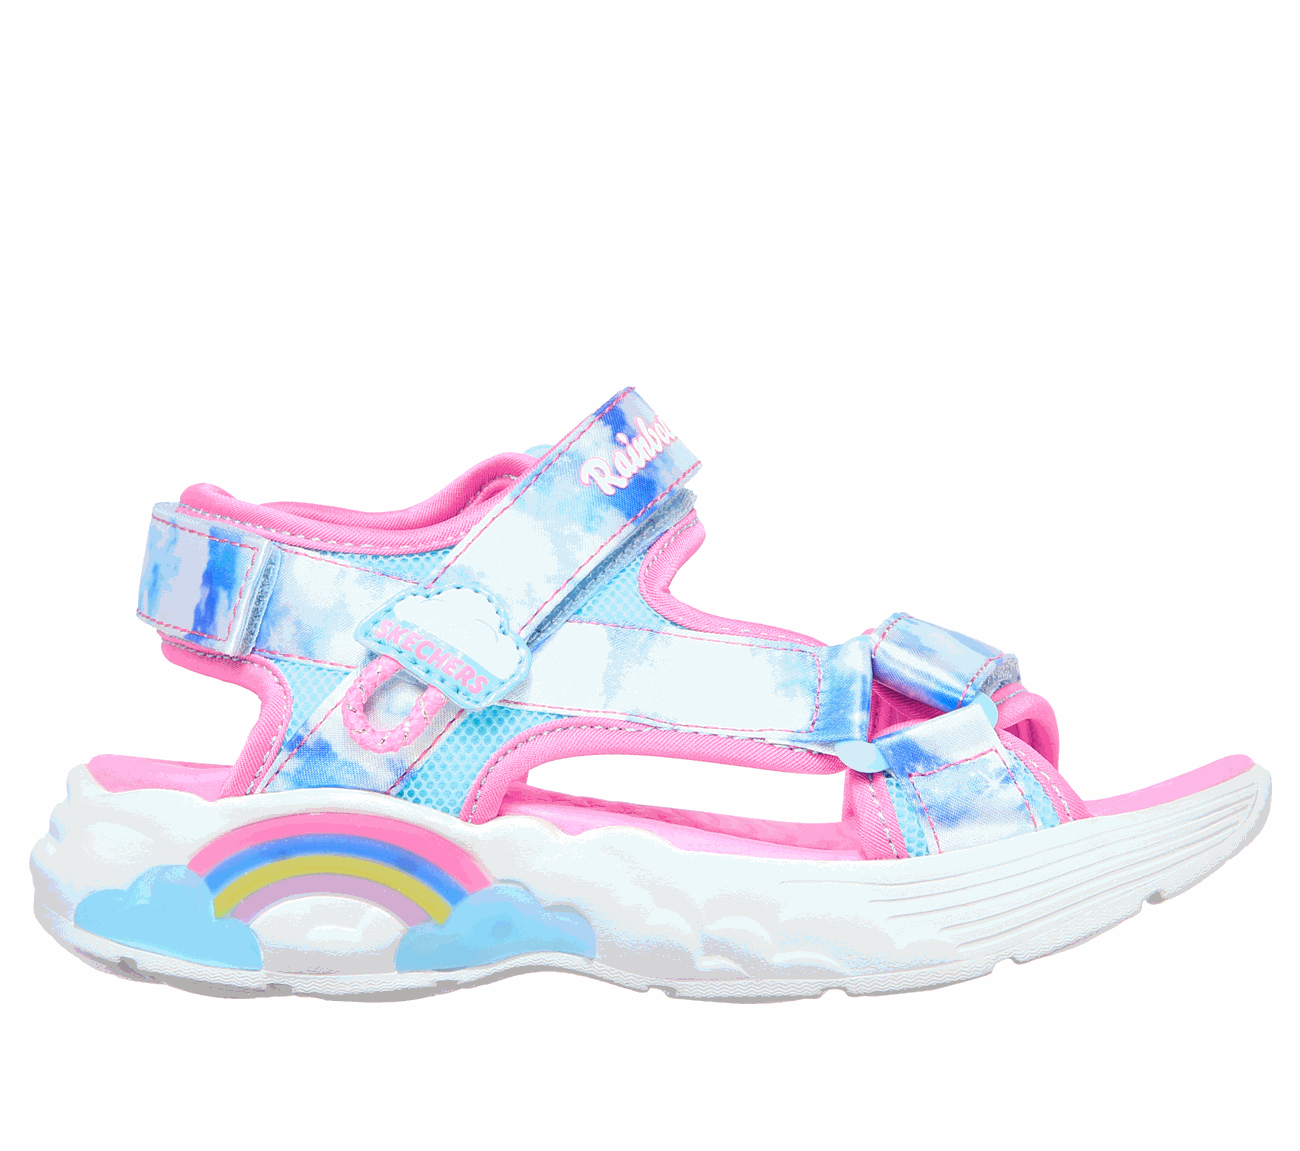 Buy SKECHERS Rainbow Racer Sandal - Summer Sky SKECHERS S-Lights Shoes